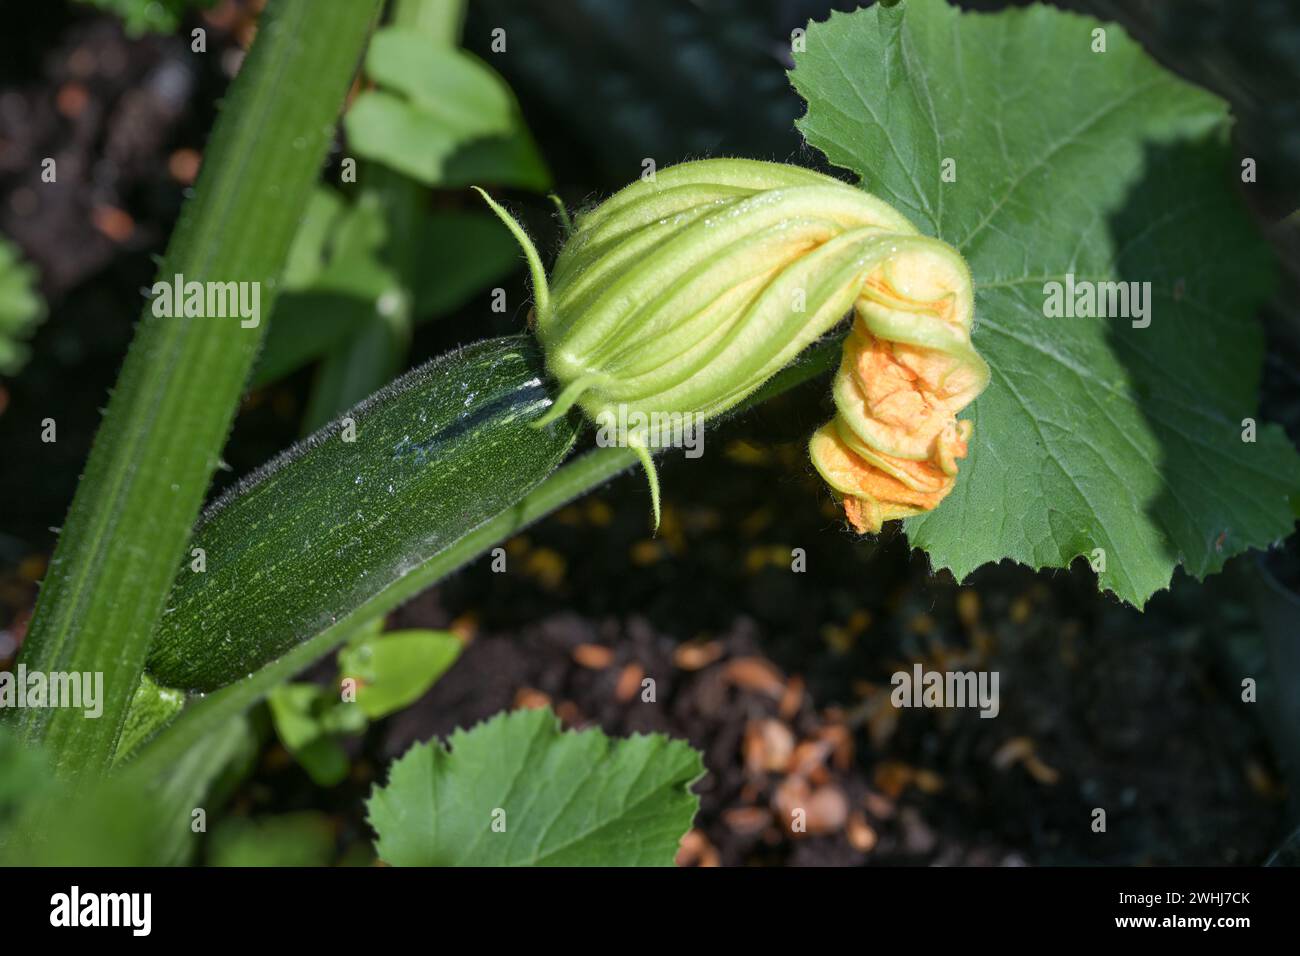 Zucchine verdi al fiore d'arancia, coltivate in casa nell'orto per alimenti sani e biologici, copia spazio, selezionata f Foto Stock